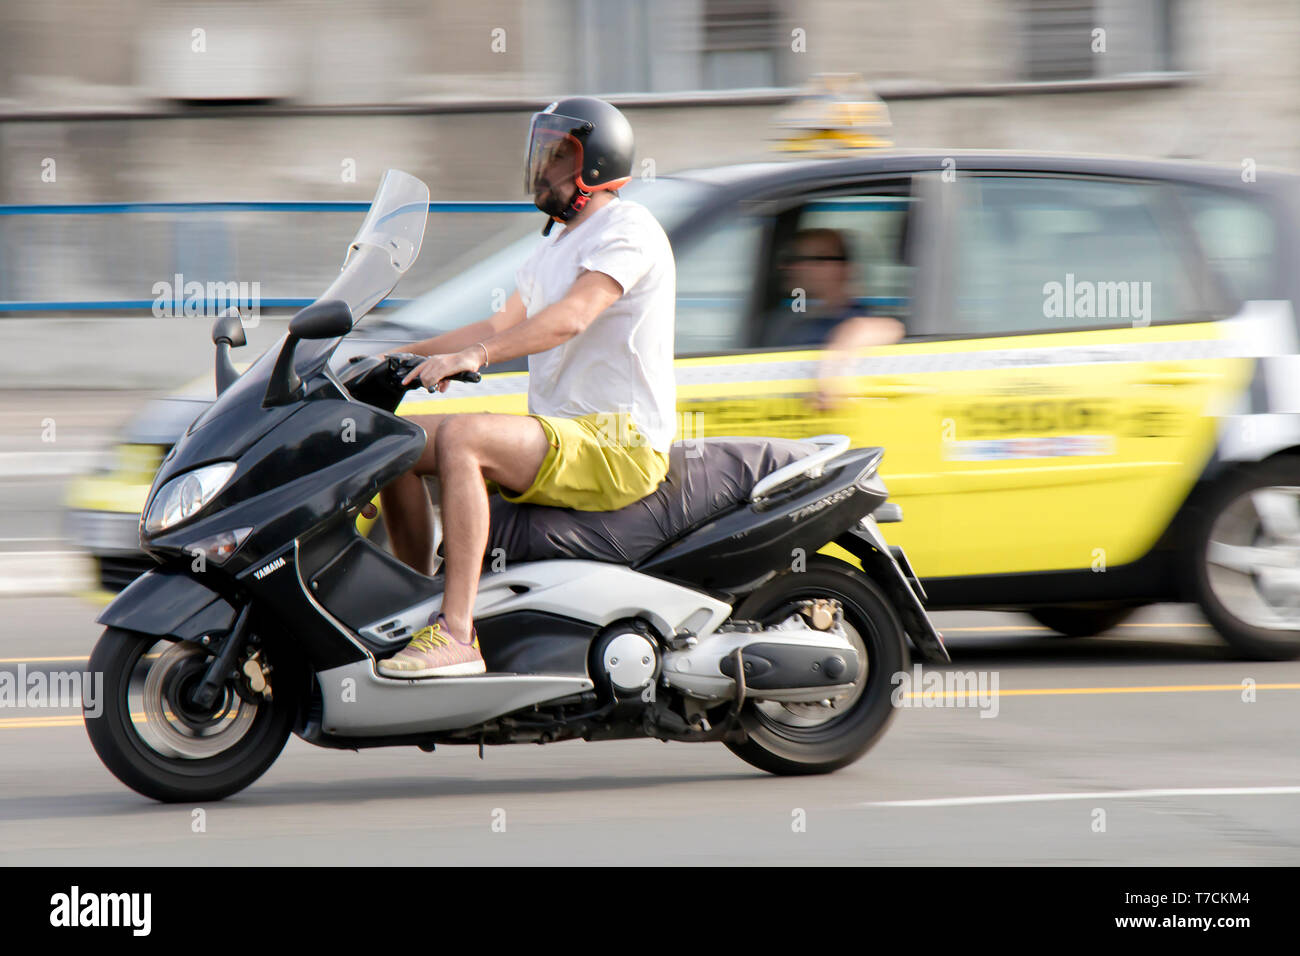 Belgrad, Serbien - April 26, 2019: Ein Mann reiten Roller in Stadt Straße Verkehr und blurry Taxi Auto hinter Stockfoto